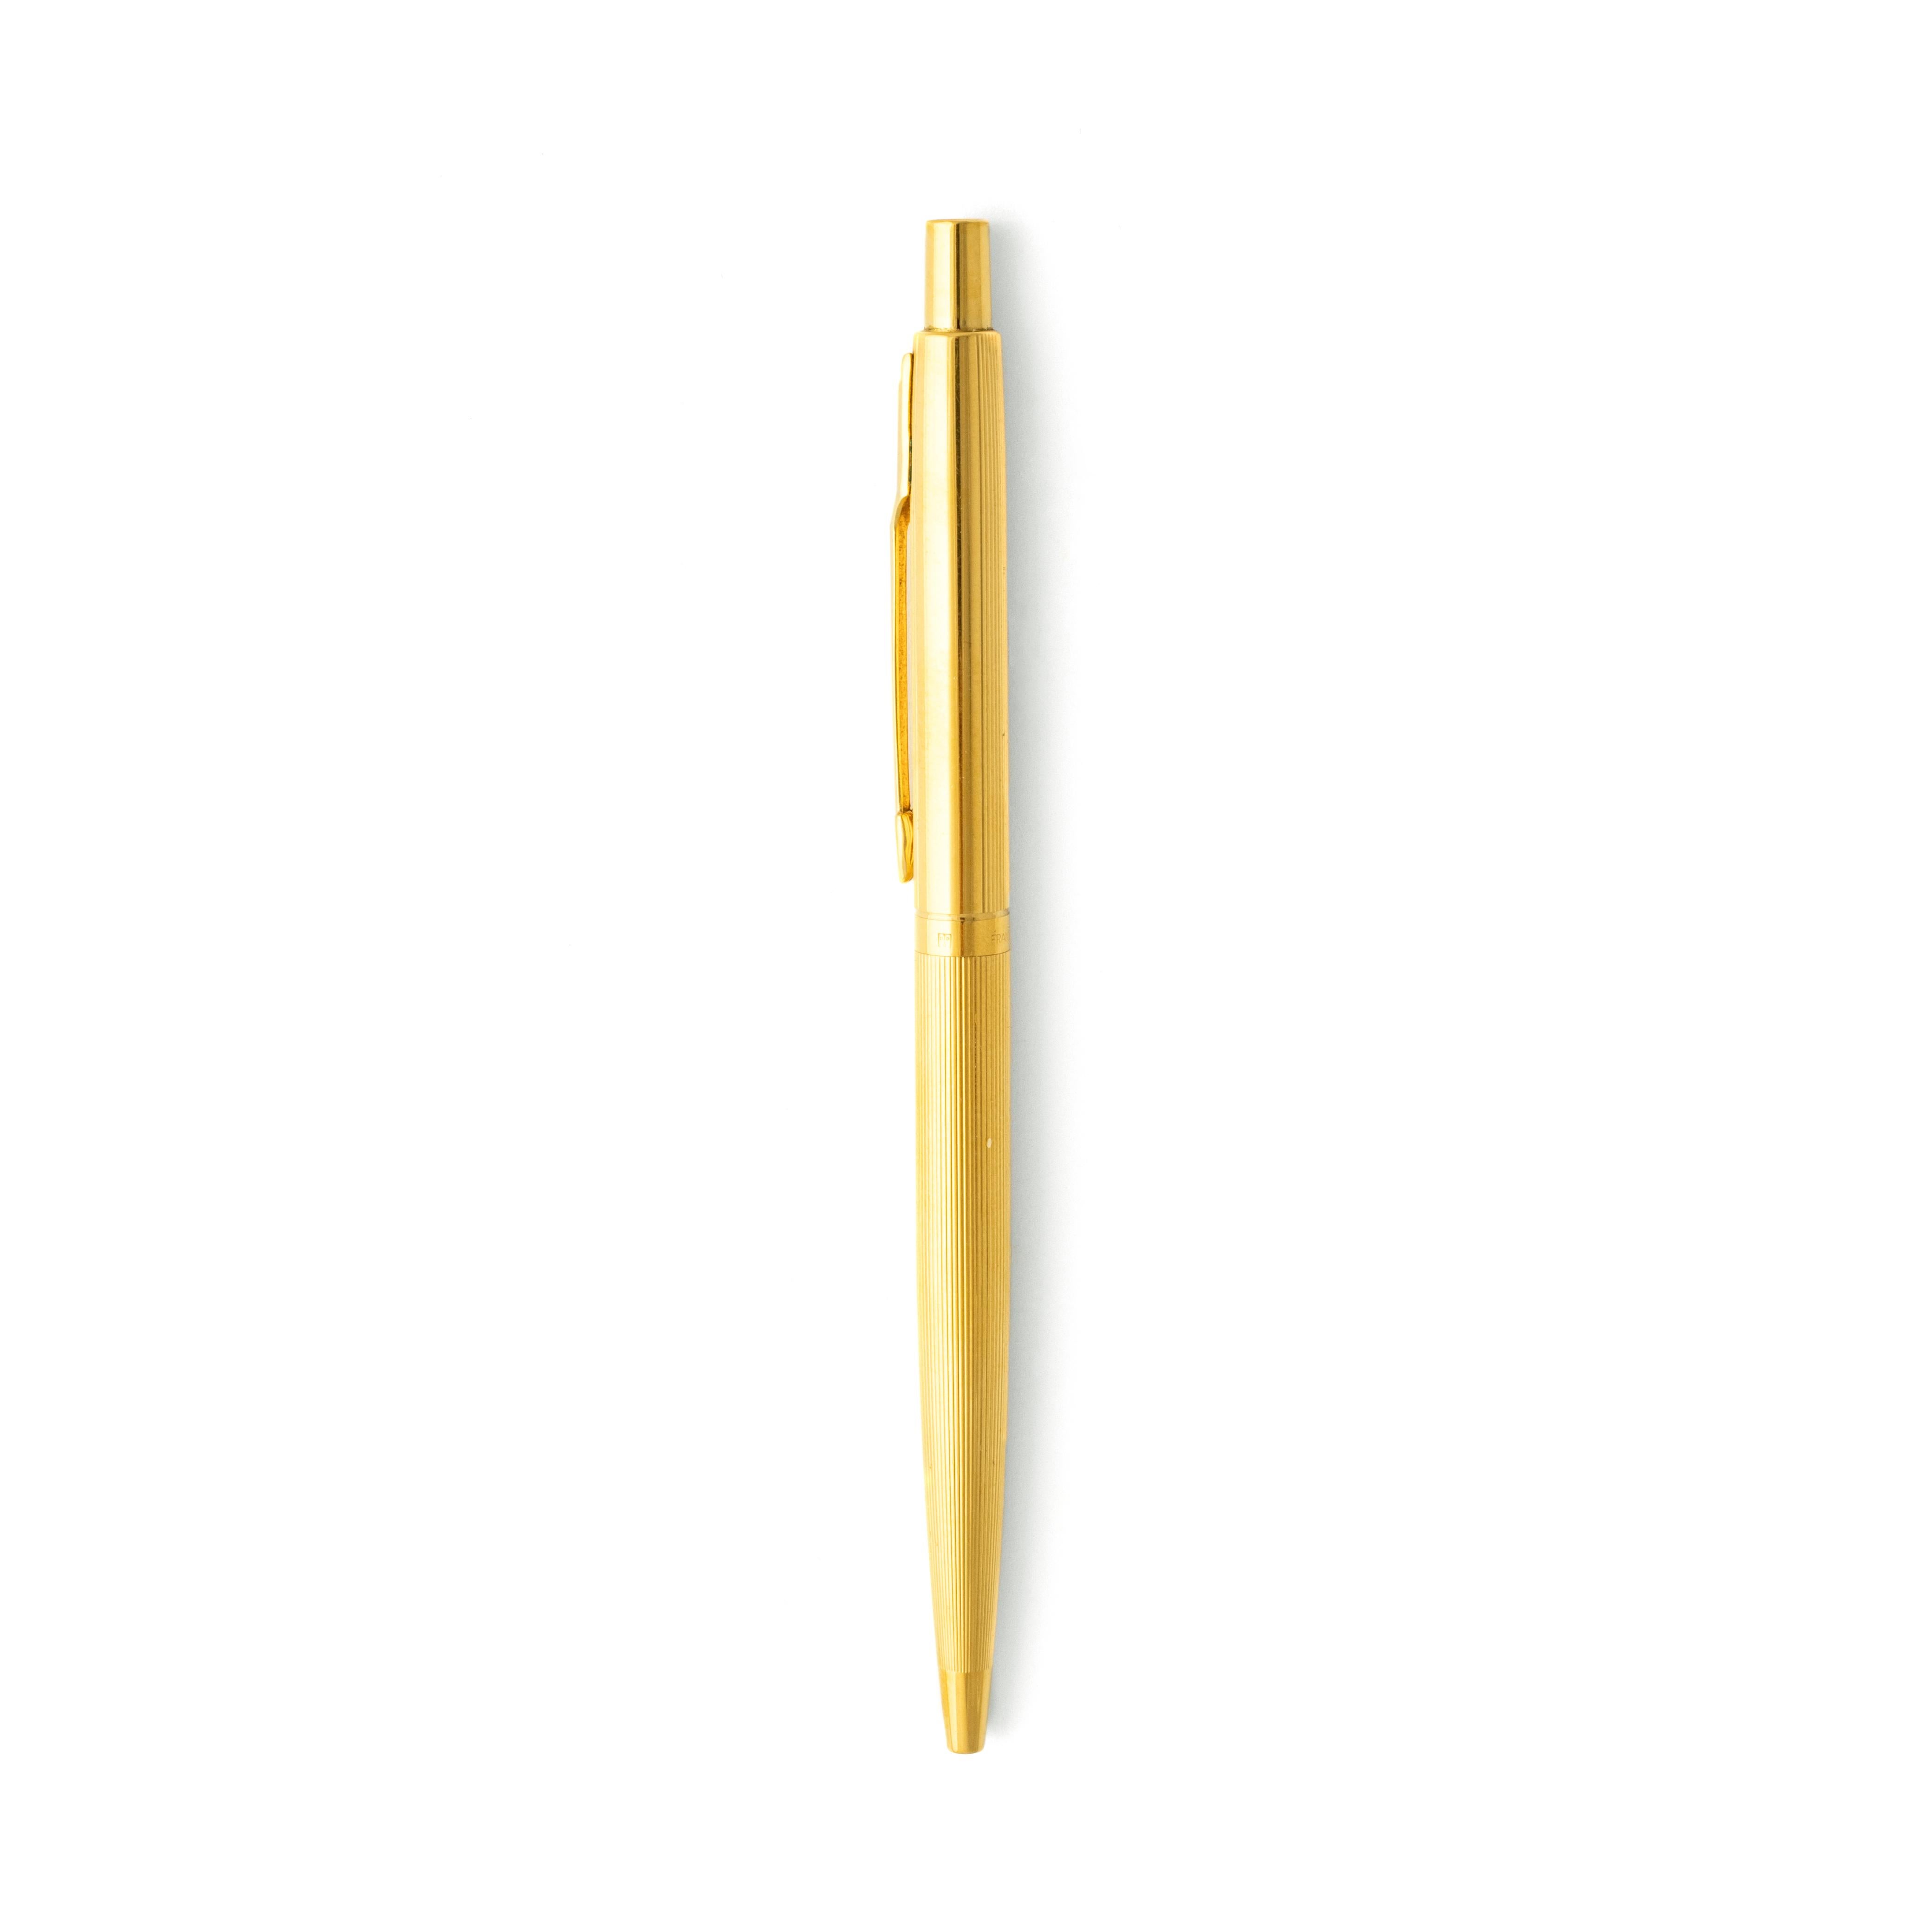 Parker Gold plated BallPoint Pen.
Collection 45 Flighter. 
Abmessungen: 13,20 x 0,75 Zentimeter.

Verkauft wie besehen. Wir übernehmen keine Garantie für das einwandfreie Funktionieren dieses Stifts.